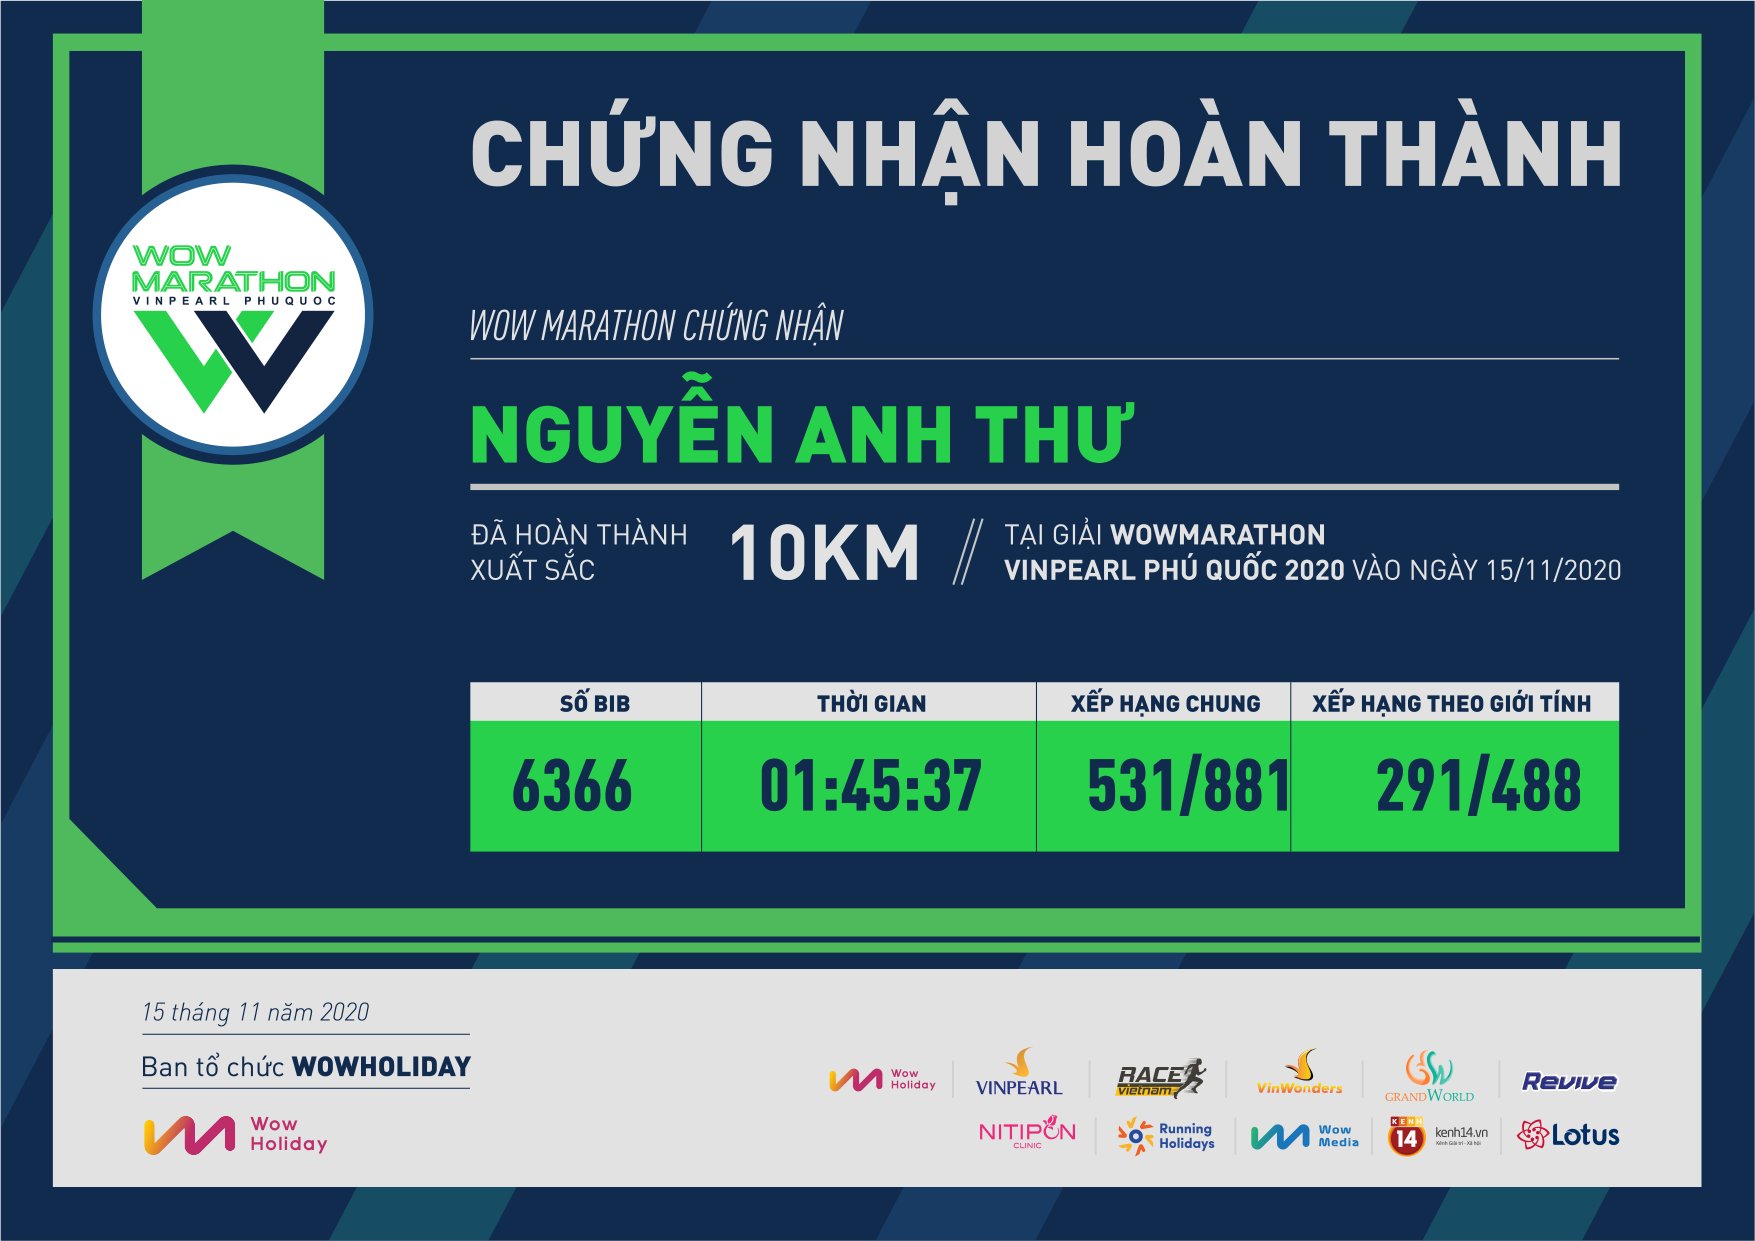 6366 - Nguyễn Anh Thư